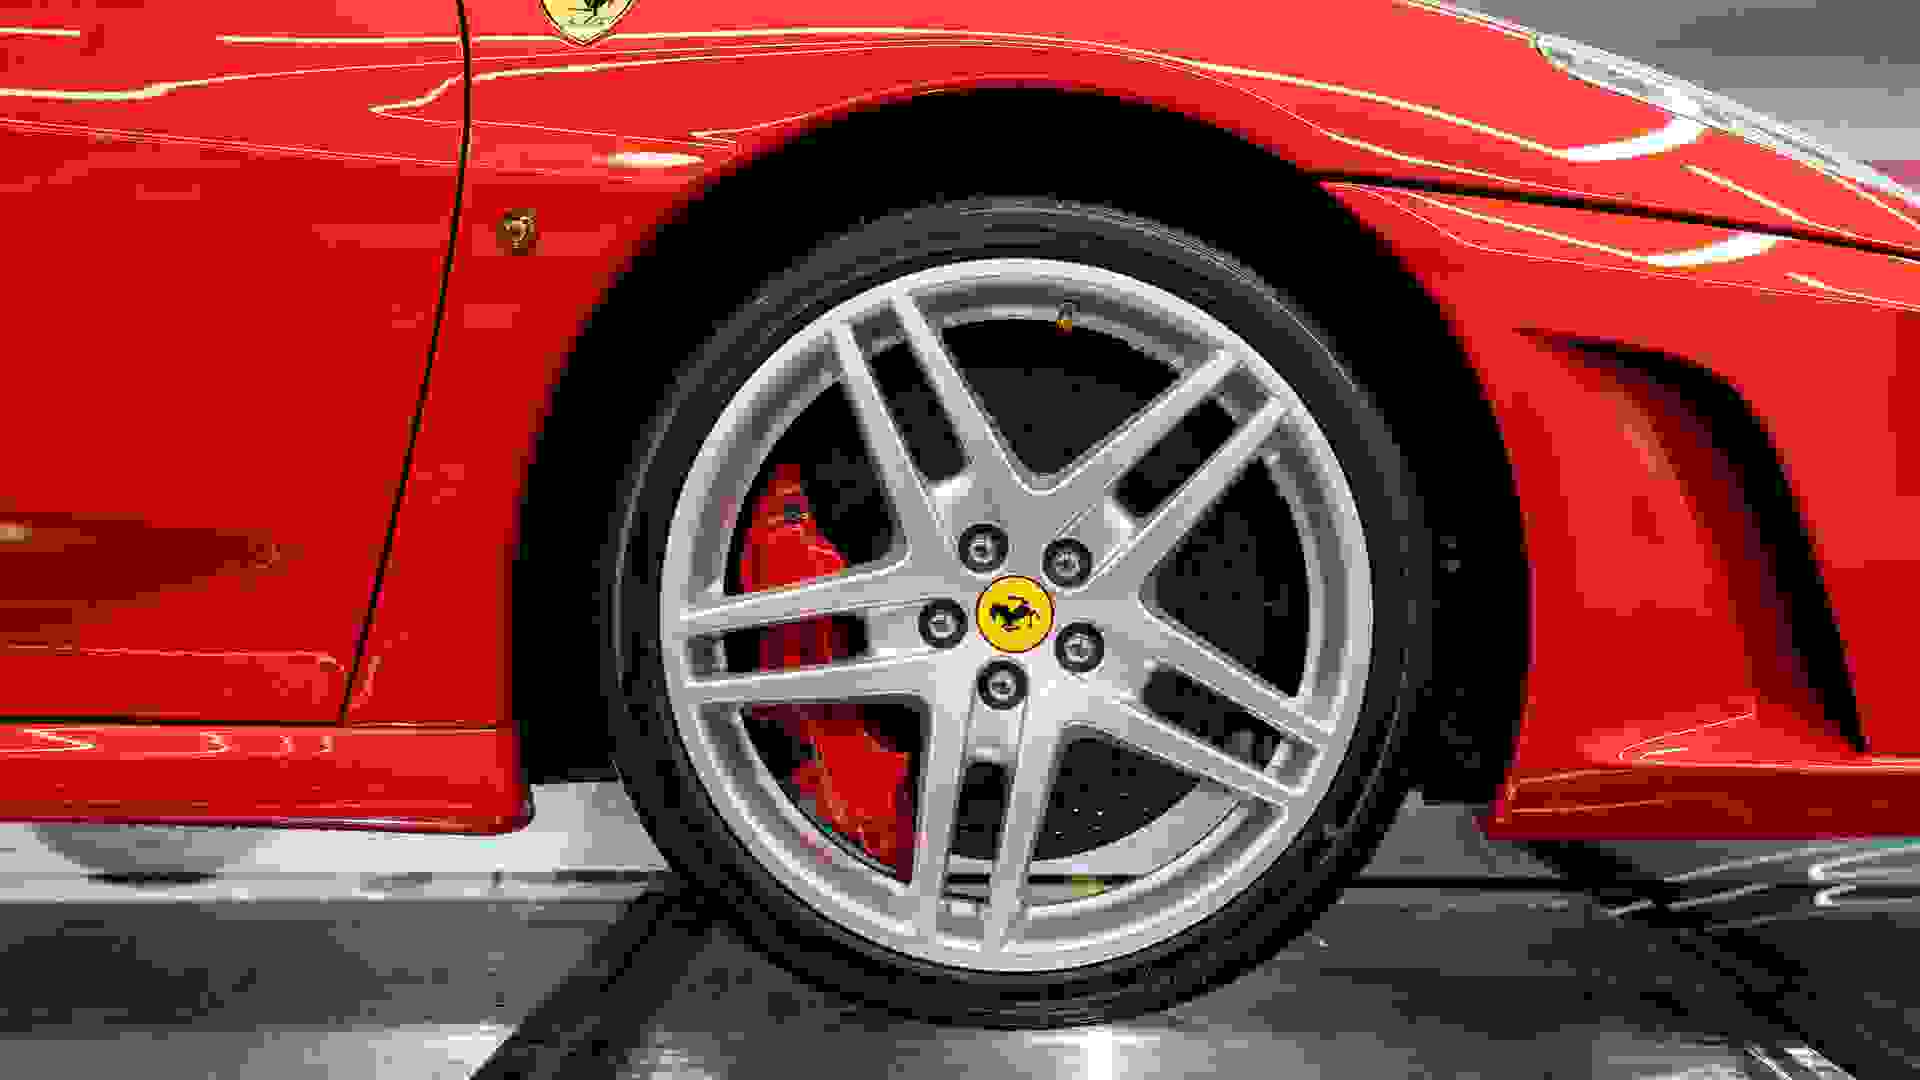 Ferrari F430 Photo 082ad25c-cf5f-4a6d-85b5-f01249c0a4f1.jpg